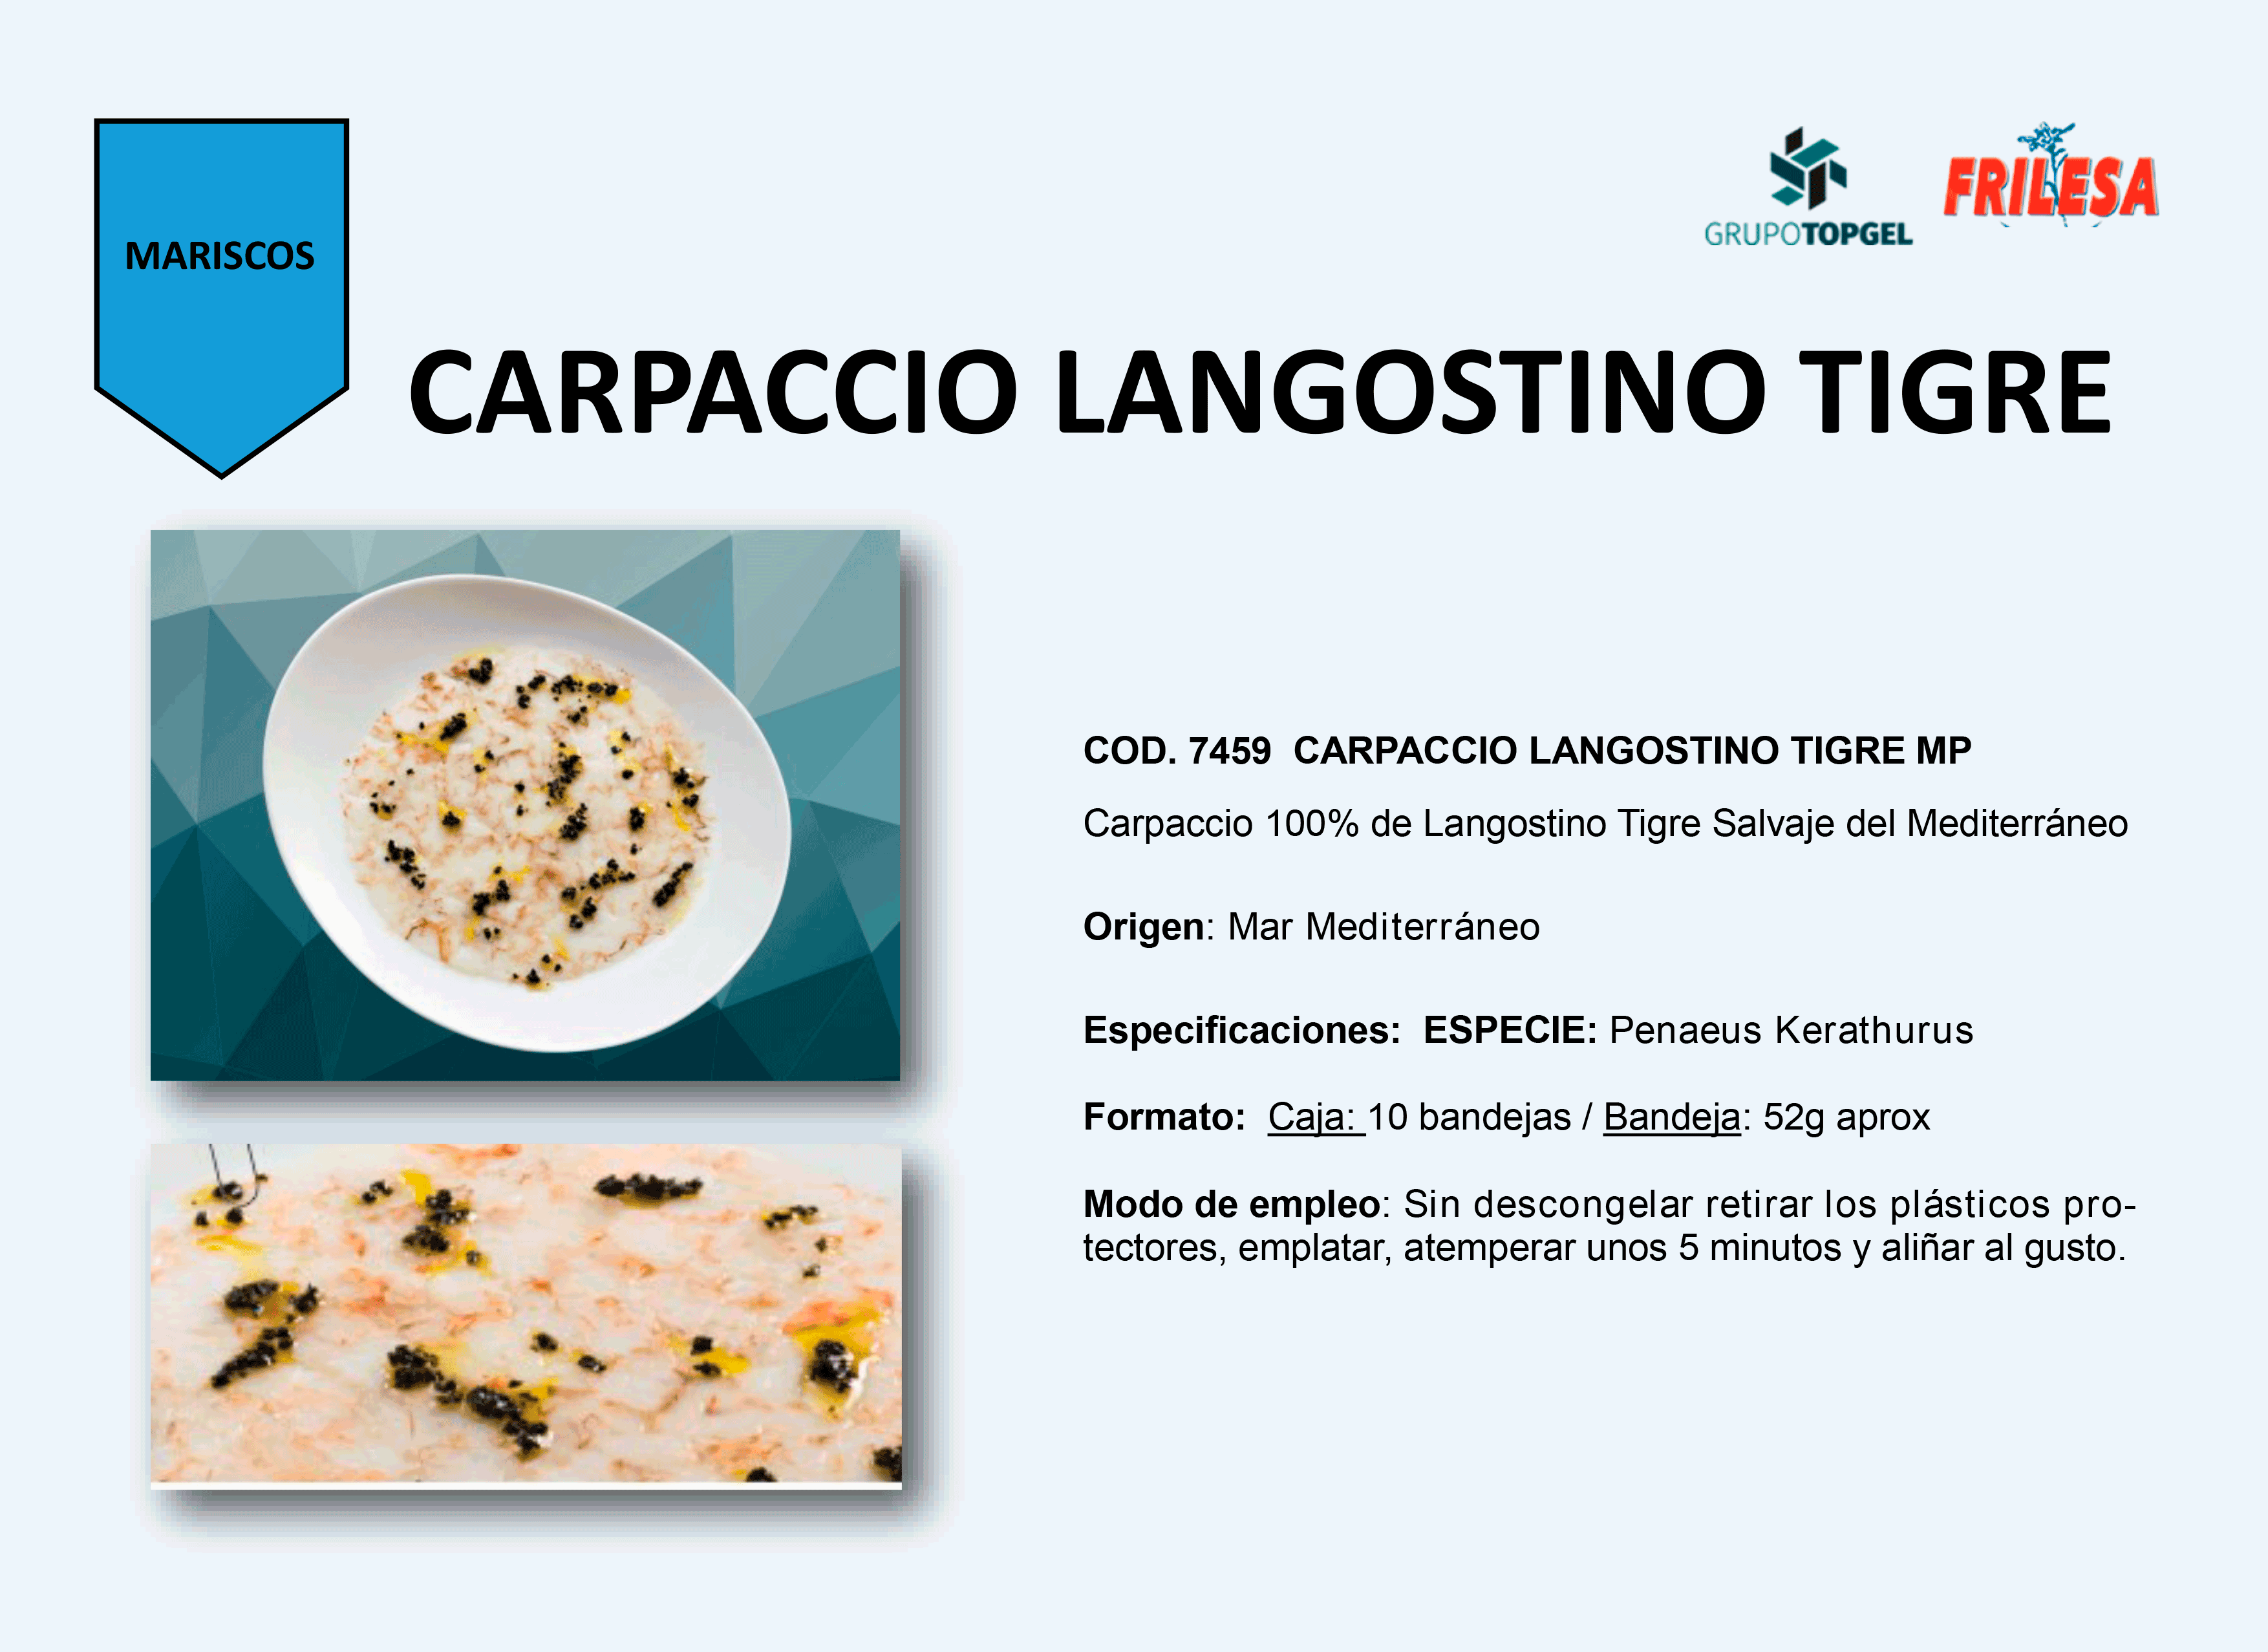 CARPACCIO-LANGOSTINO-TIGRE